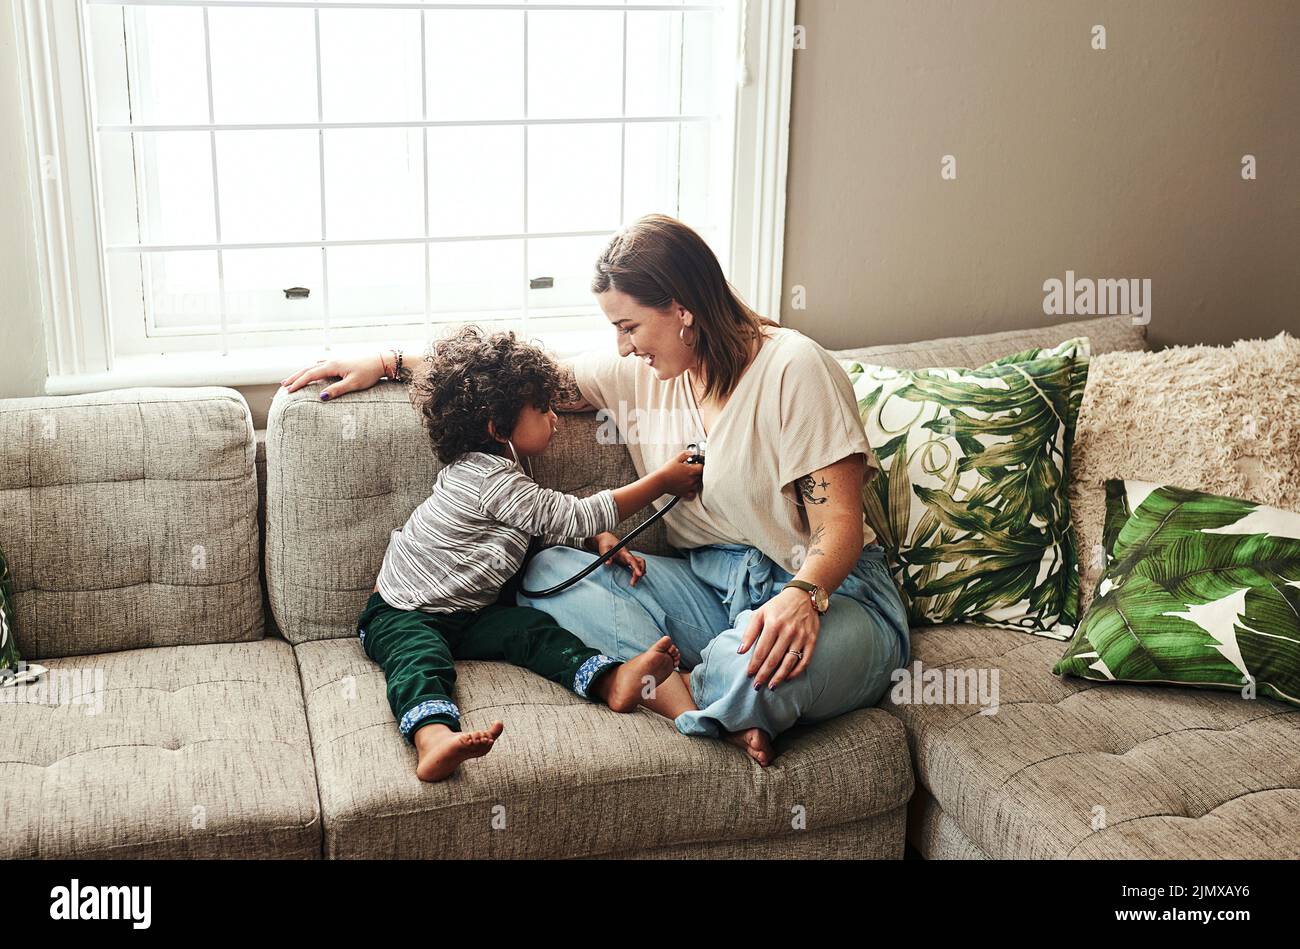 Abbiamo un piccolo medico in preparazione: Una giovane ragazza allegra e suo figlio che giocano con uno stetoscopio mentre si siede su un divano a casa Foto Stock